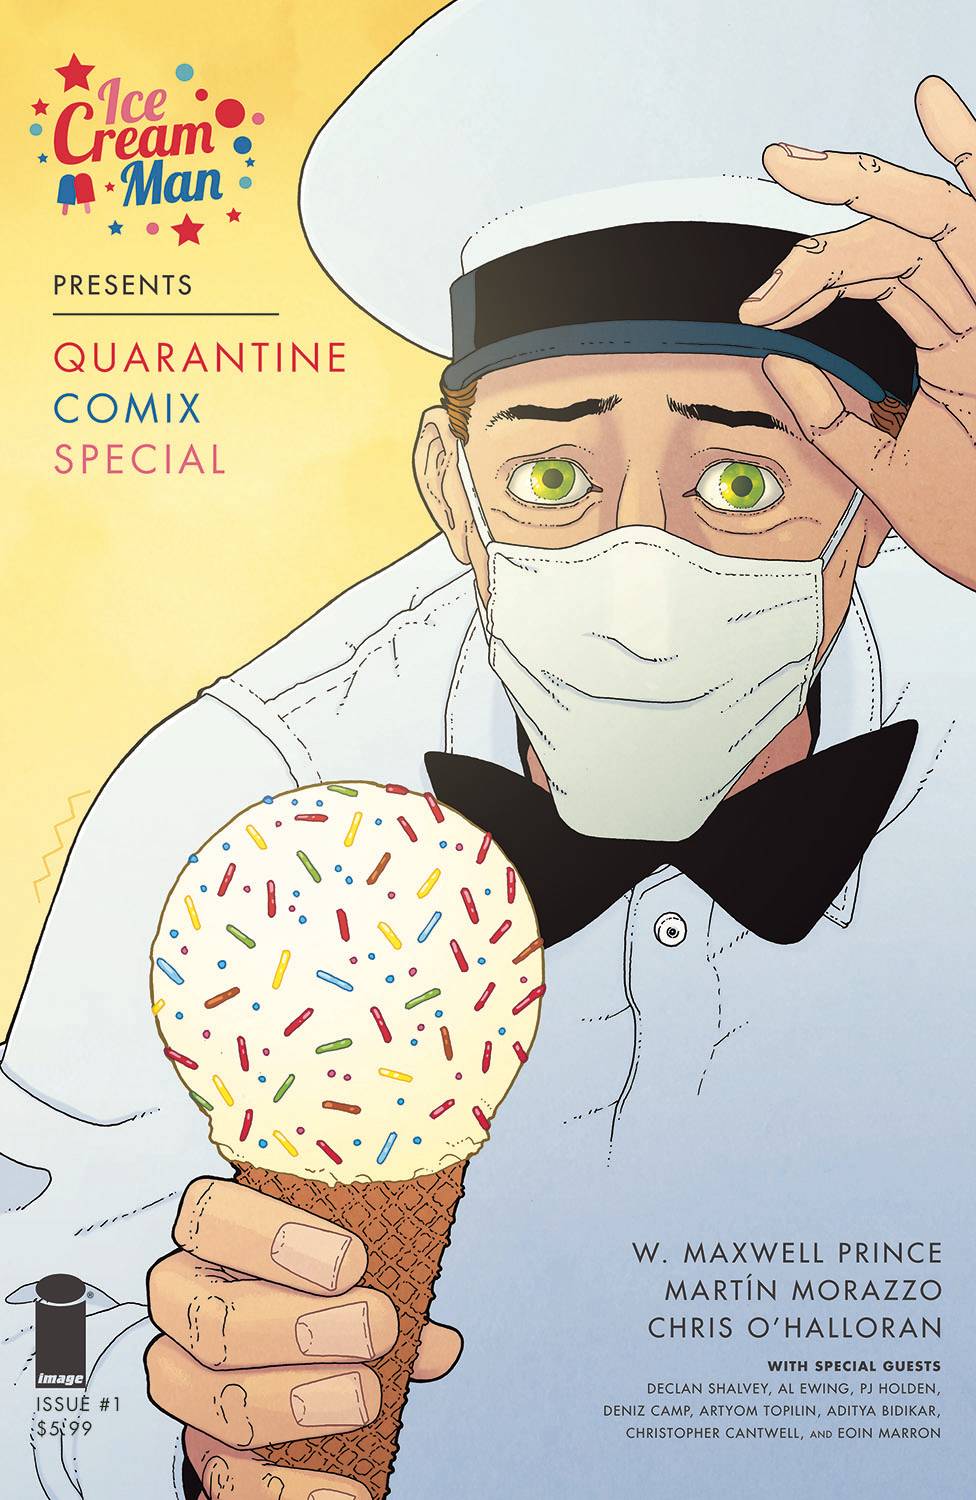 Ice-Cream-Man-Presents-Quarantine-Comix-Spec-1-Mr